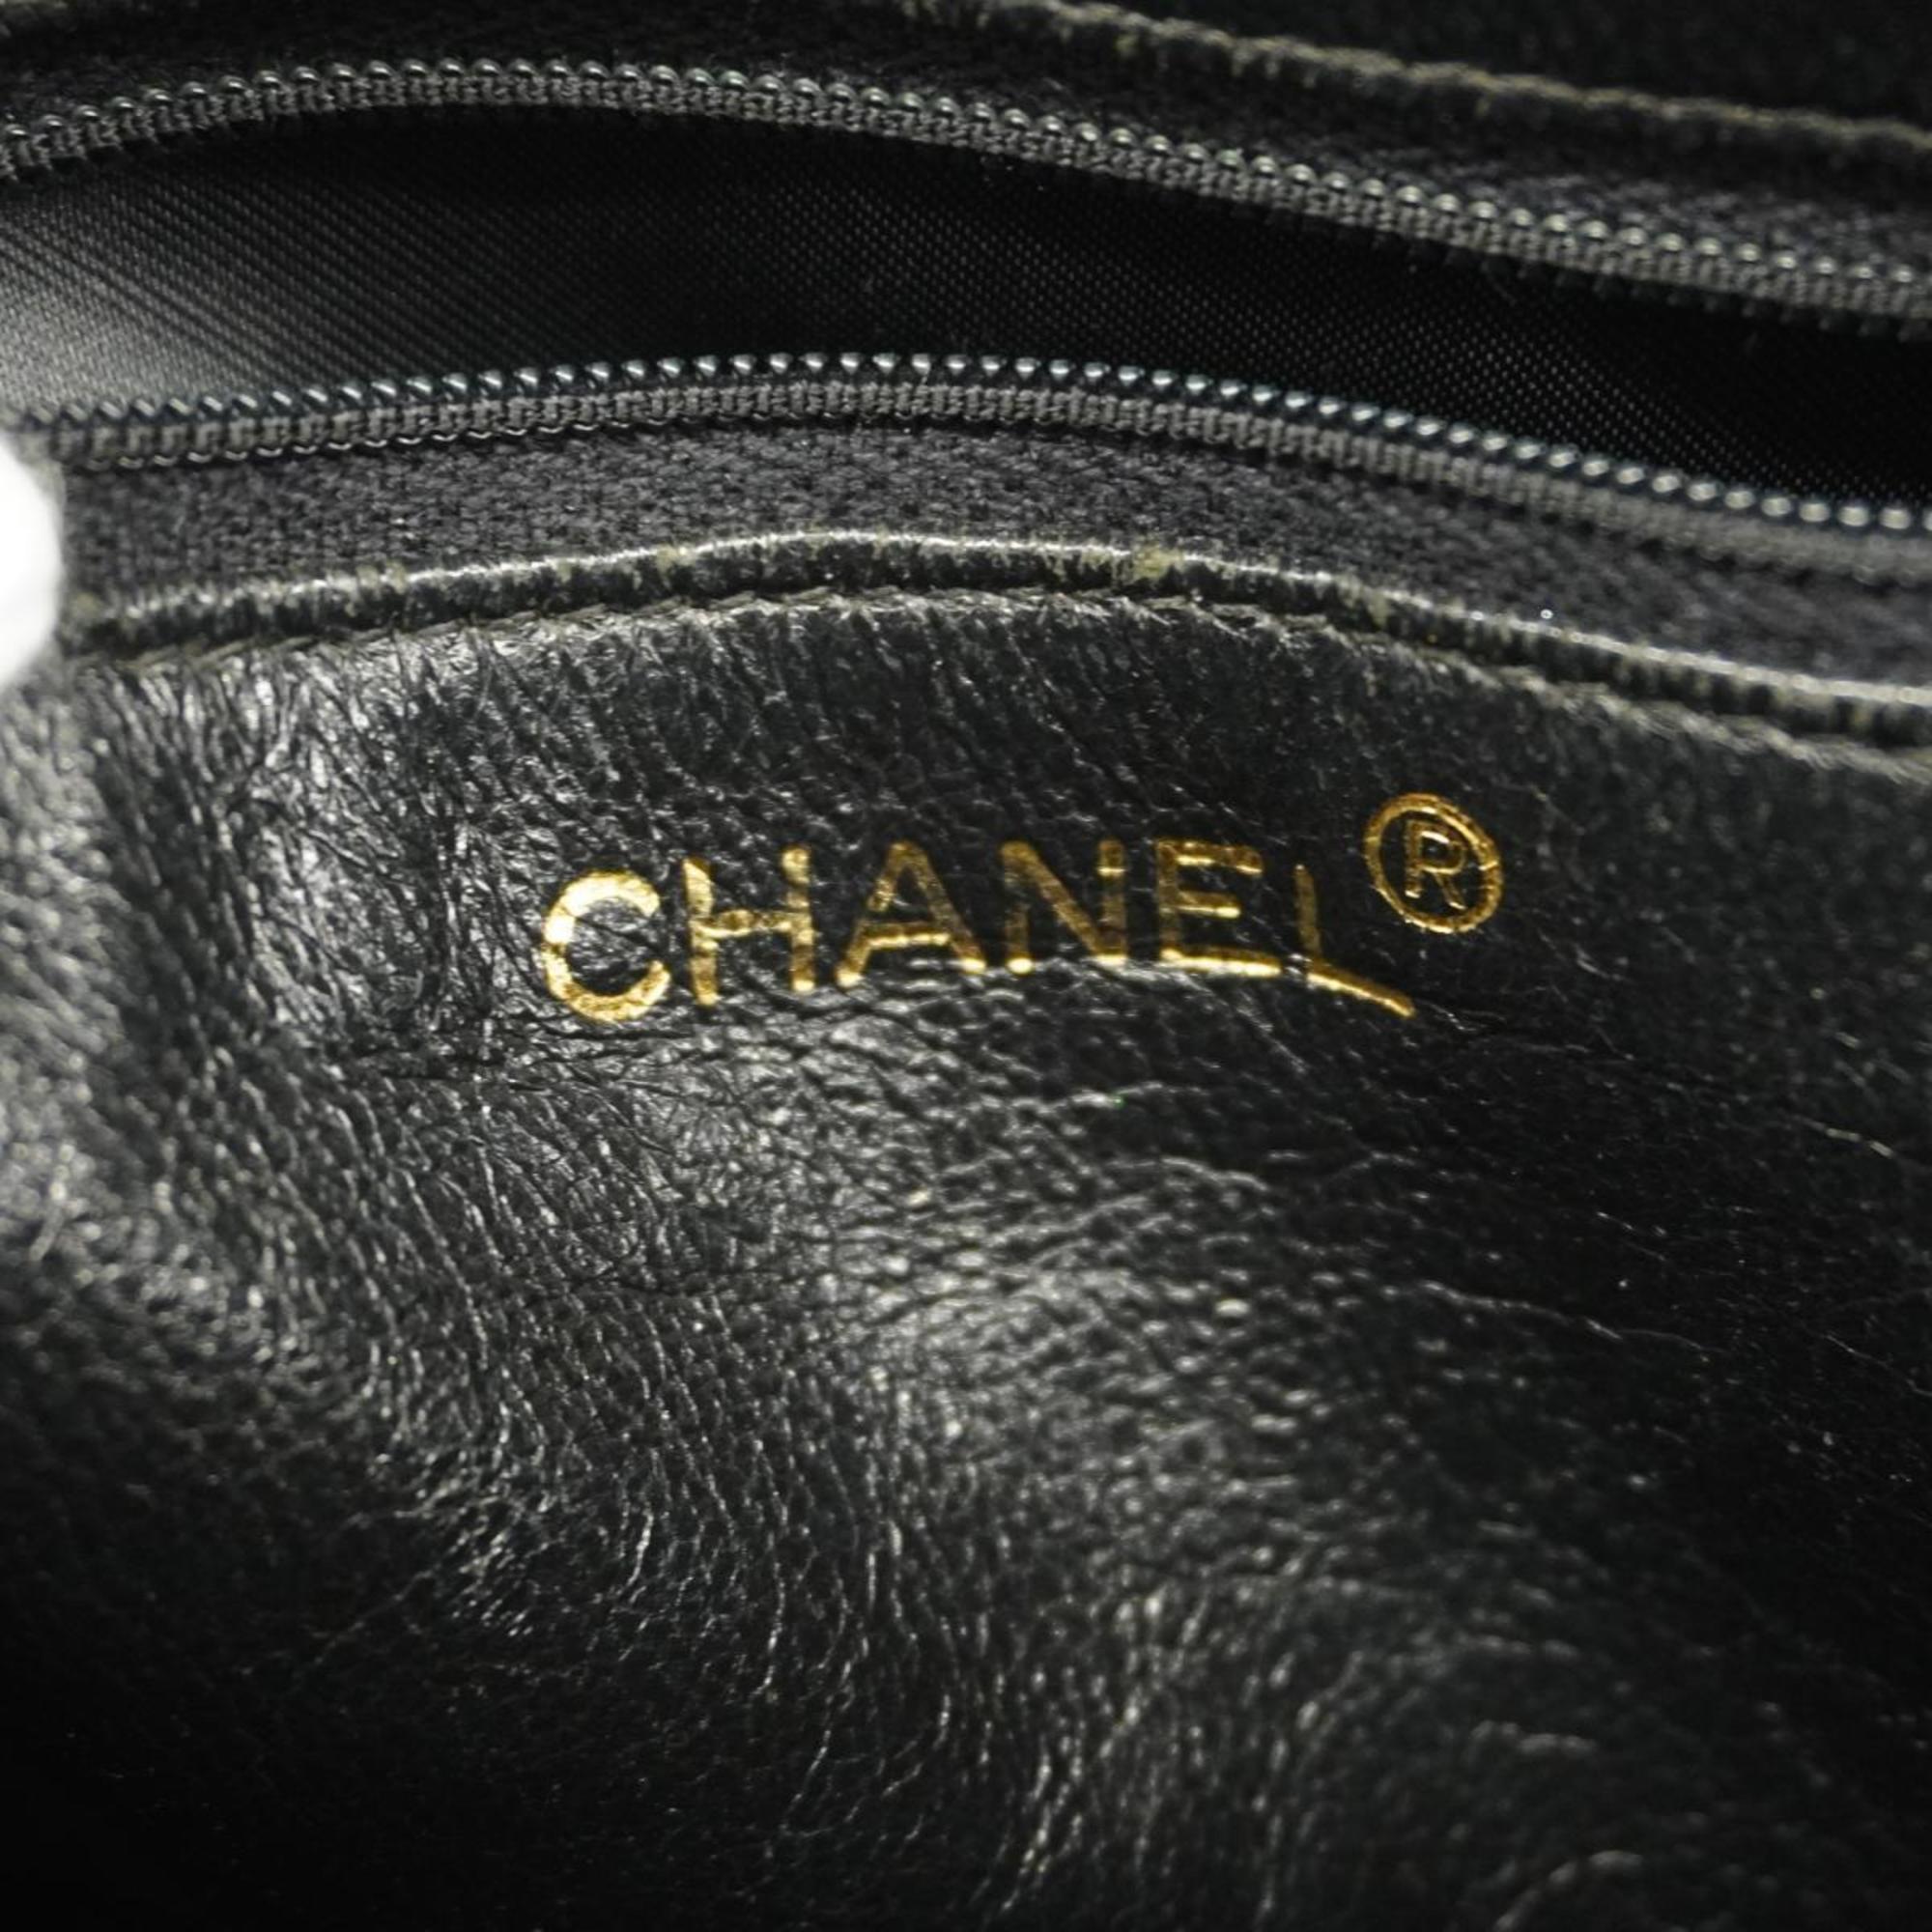 シャネル(Chanel) シャネル ショルダーバッグ マトラッセ チェーンショルダー パテントレザー ブラック   レディース